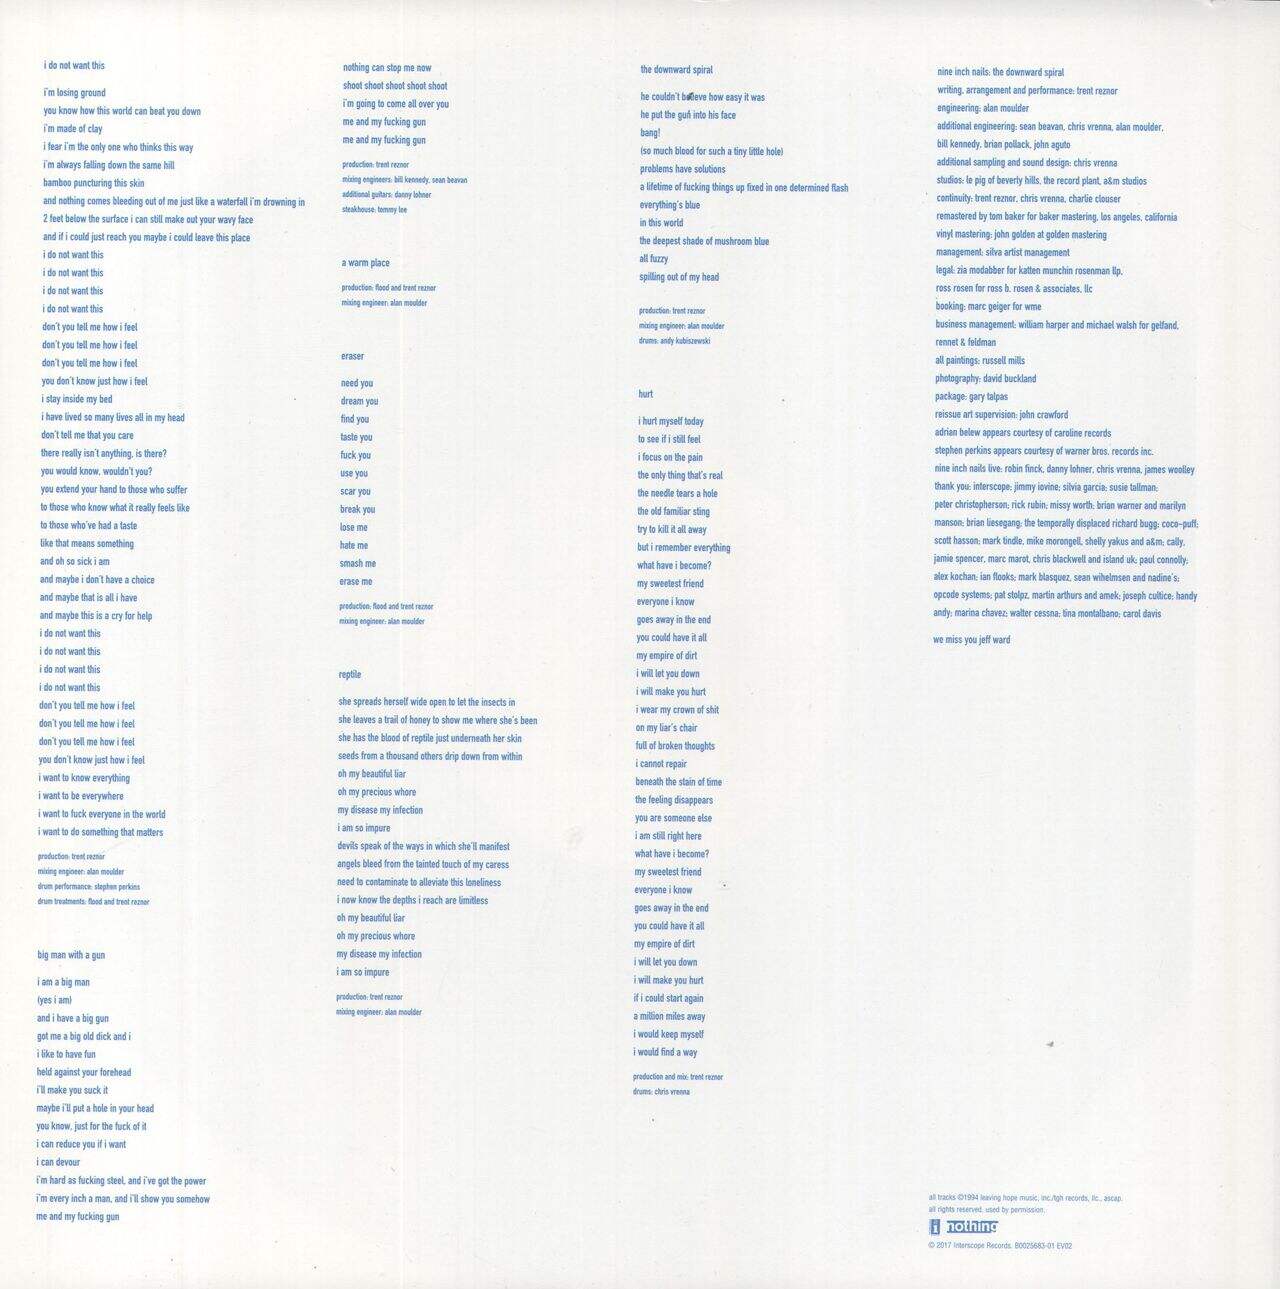 Nine Inch Nails The Downward Spiral - 180g US 2-LP vinyl set